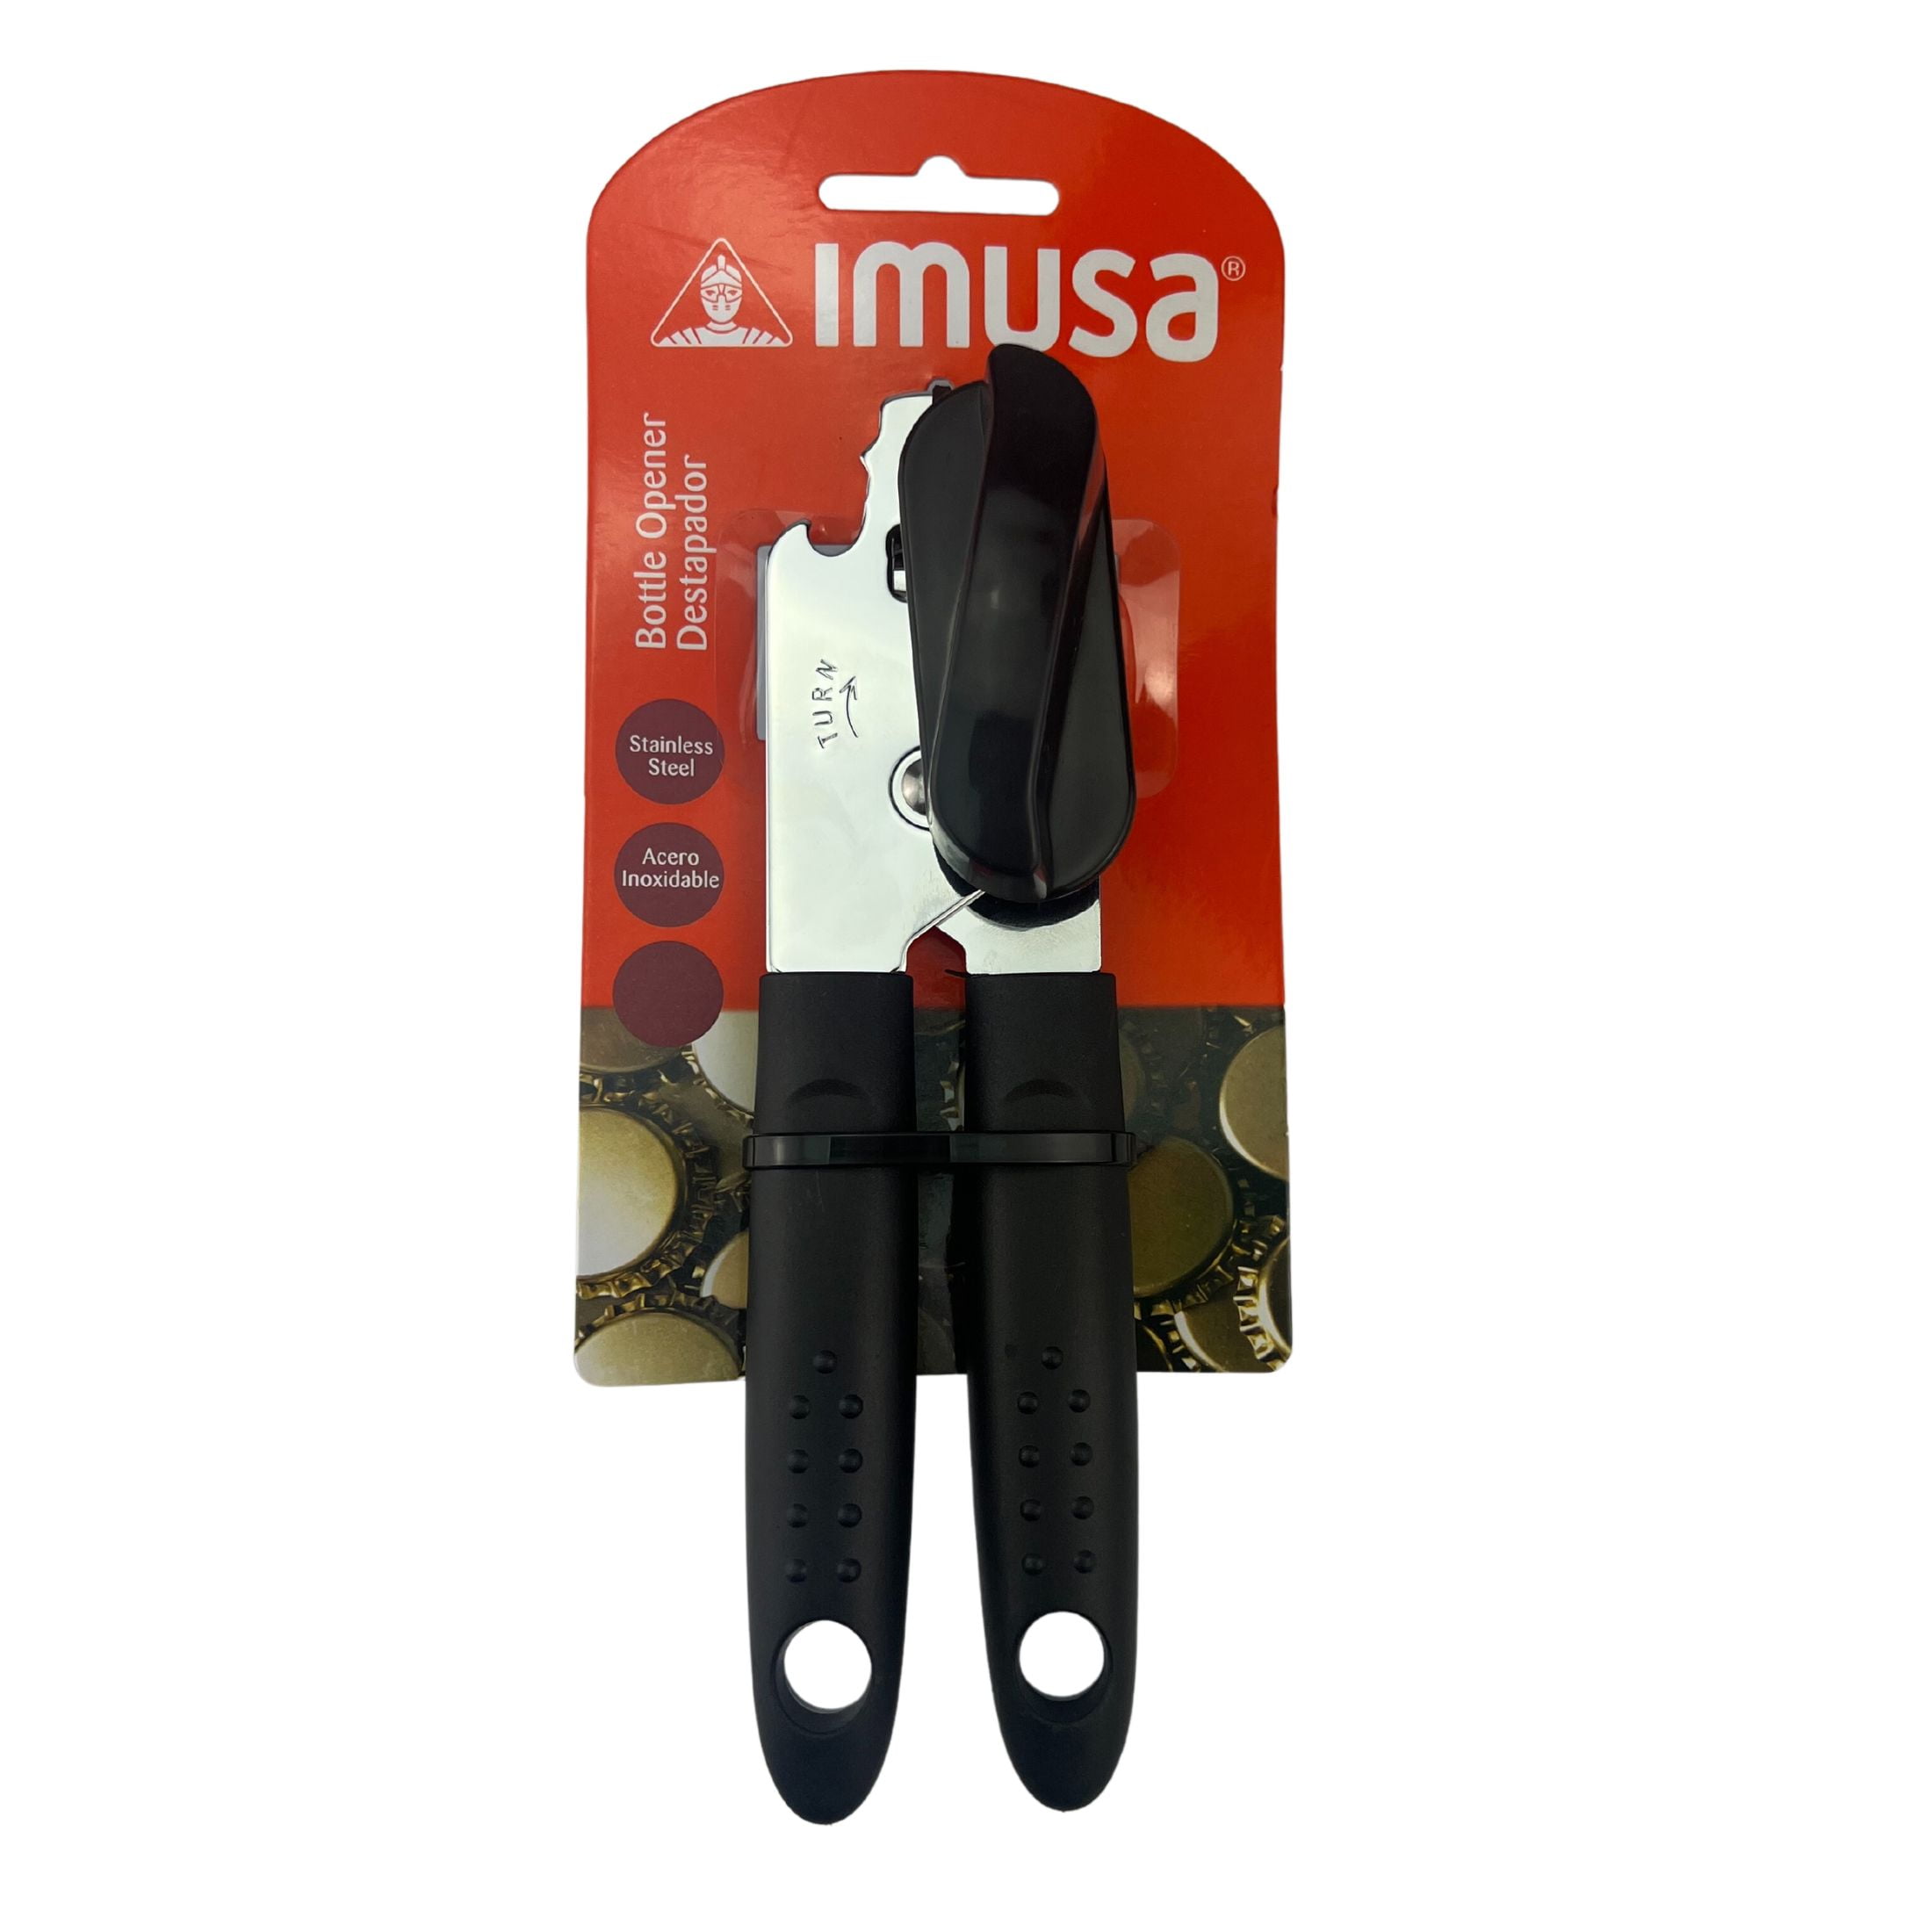 IMUSA IMUSA 3 Way Can/Bottle Opener - IMUSA